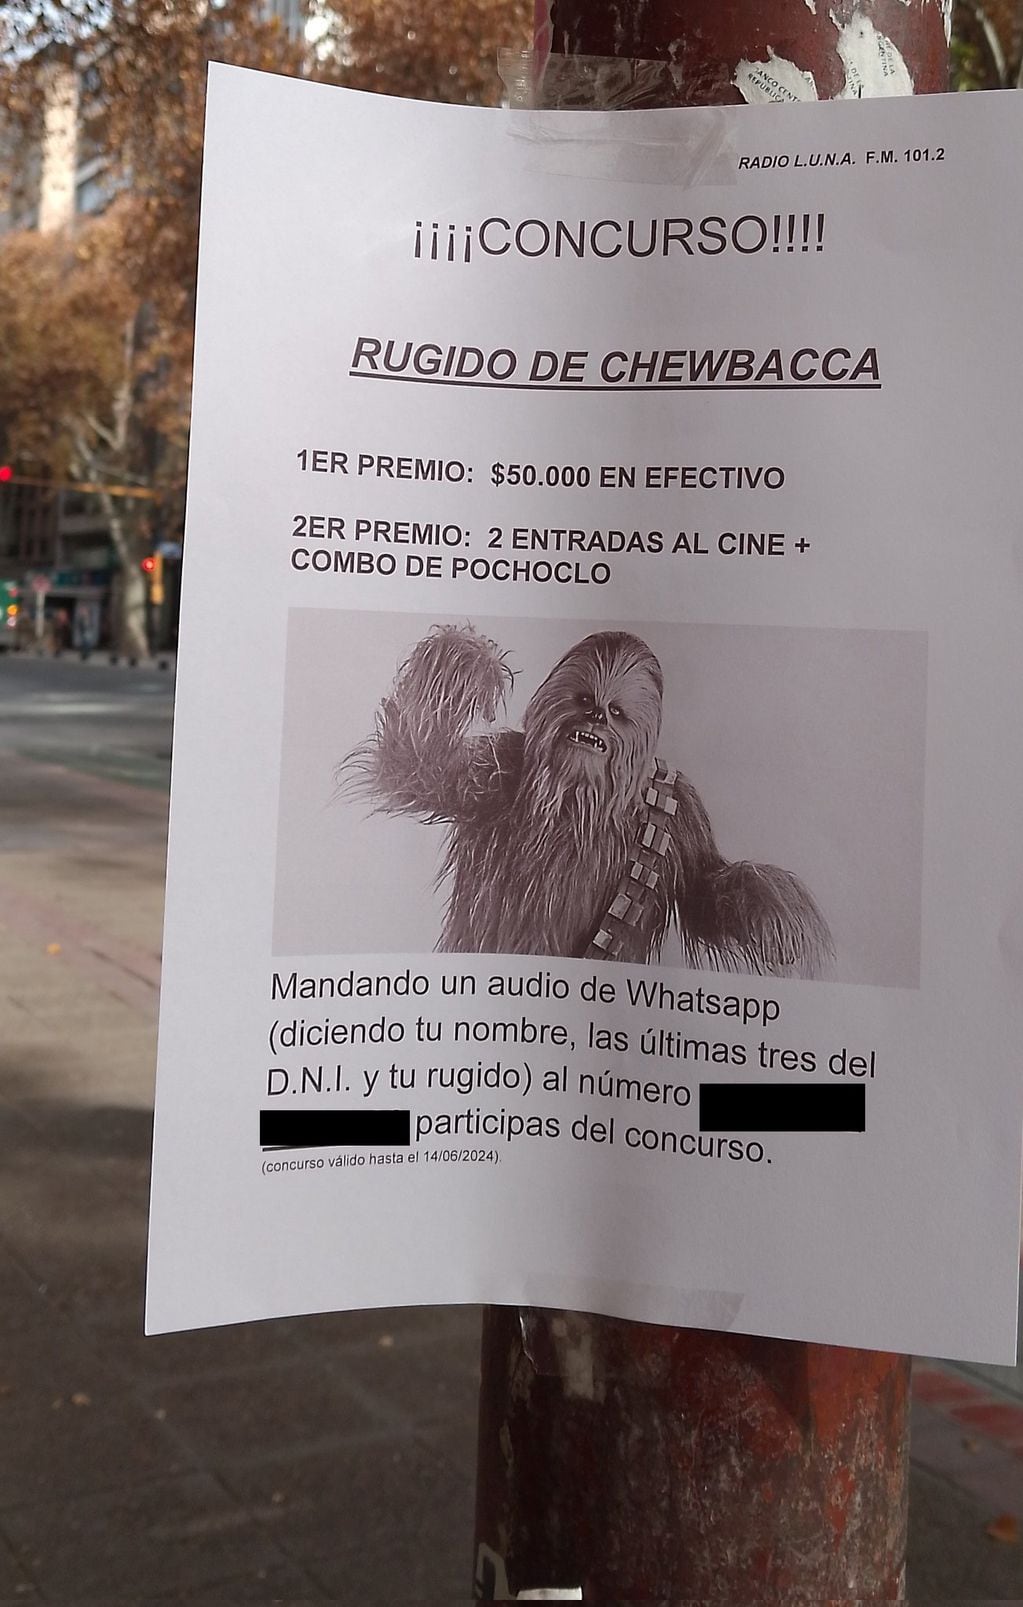 La “joda entre amigos” que terminó en viral: Con un aviso buscaban a la voz Chewbacca y recibió decenas de mensajes. Foto: Captura Web